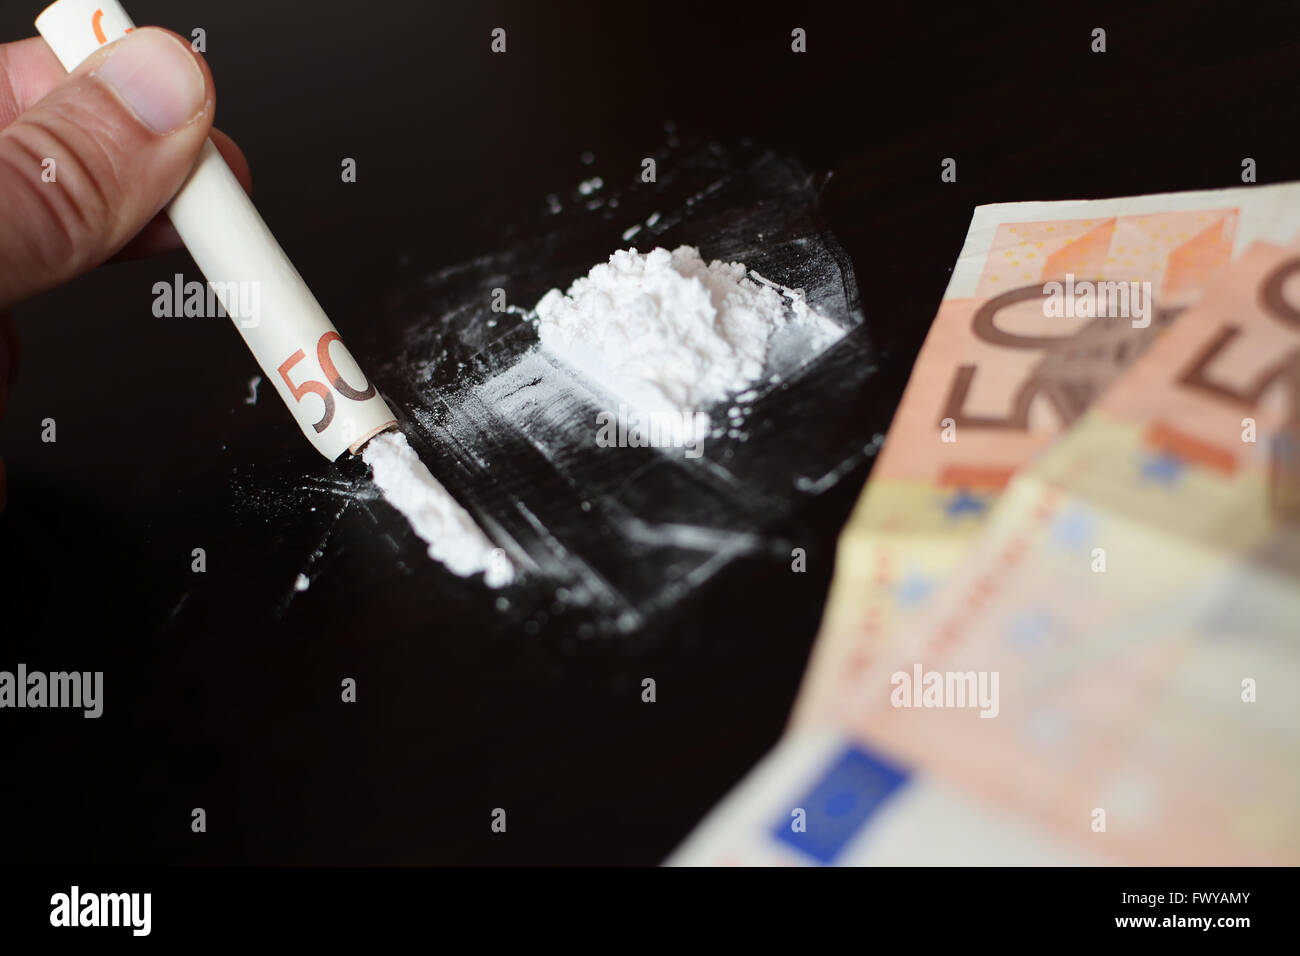 La cocaïne et de l'argent flou Banque D'Images